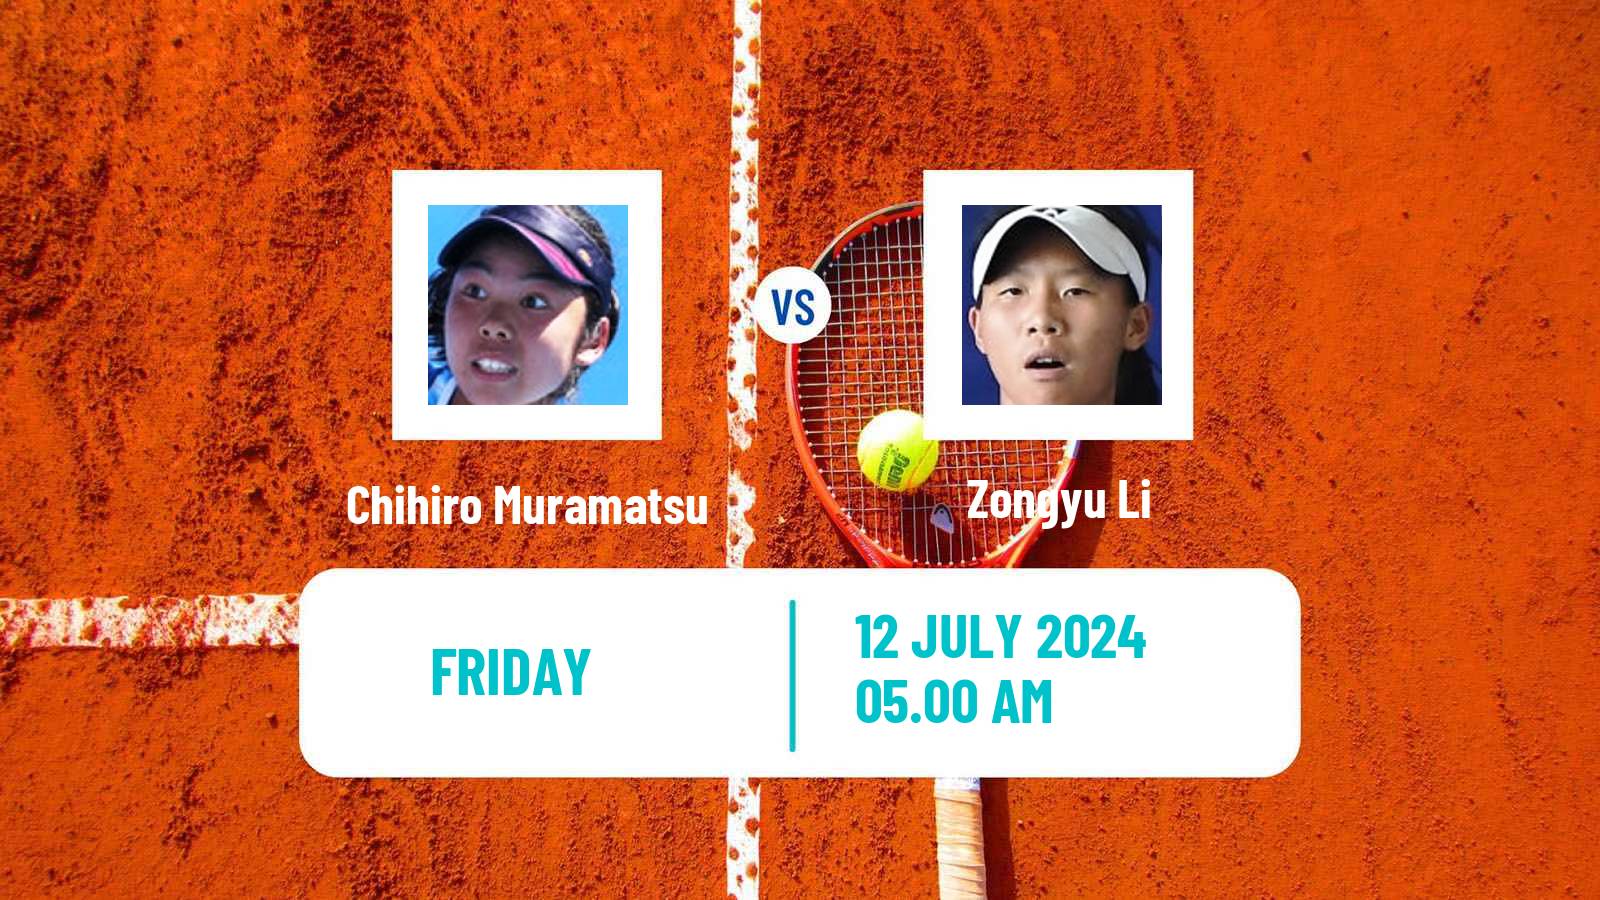 Tennis ITF W35 Tianjin Women Chihiro Muramatsu - Zongyu Li